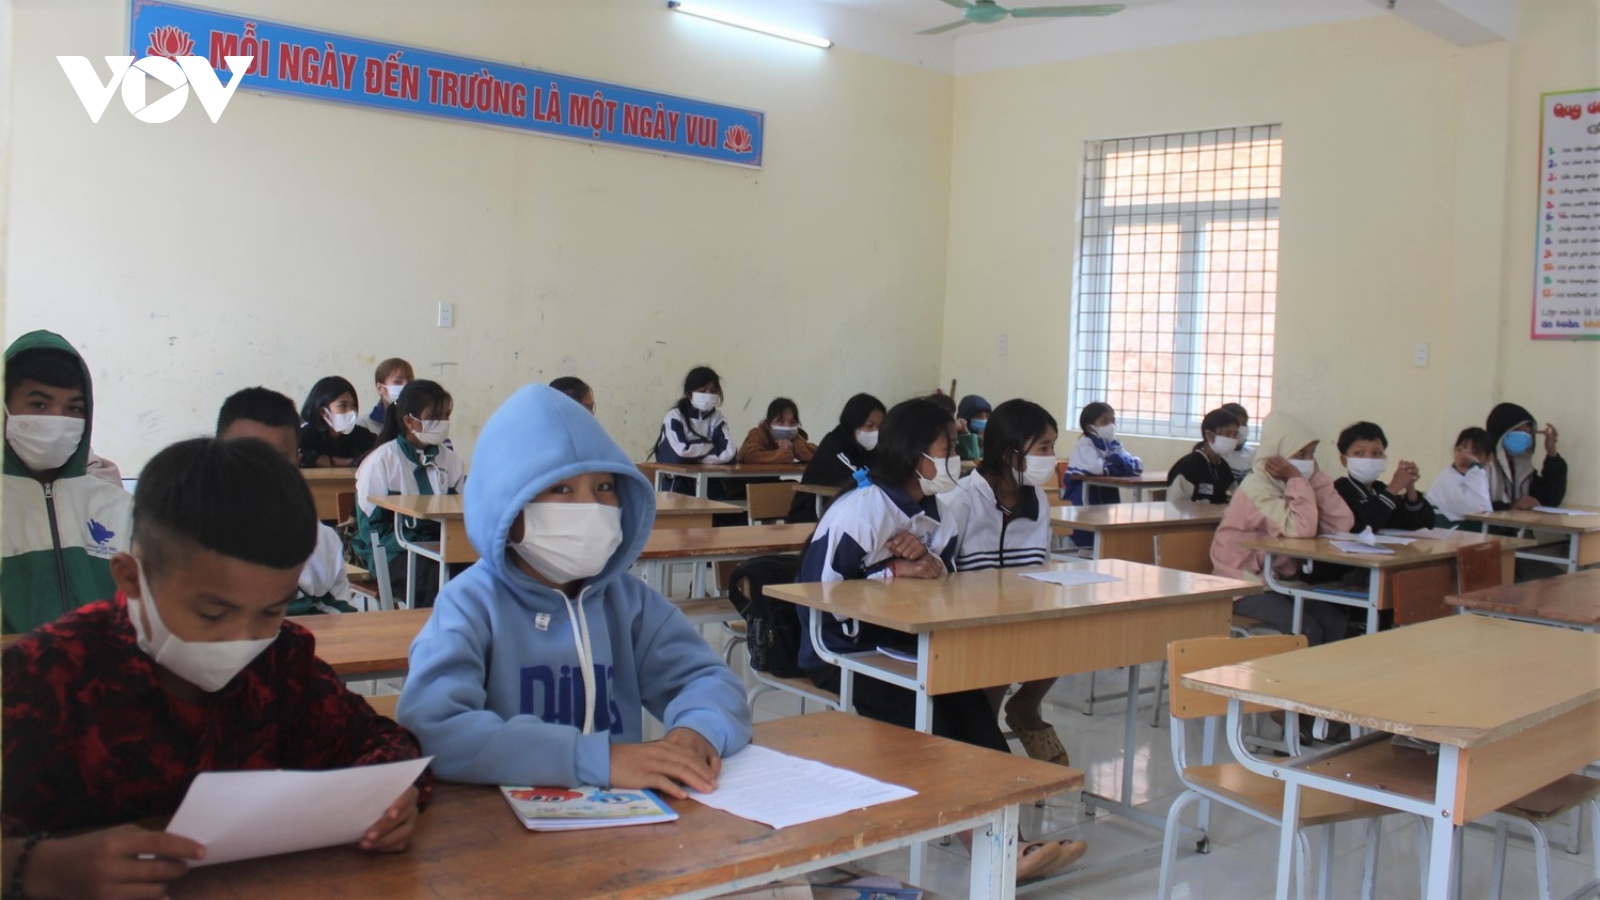 F0 tăng hơn 2.000 ca mỗi ngày, học sinh ở Quảng Bình vẫn đến trường